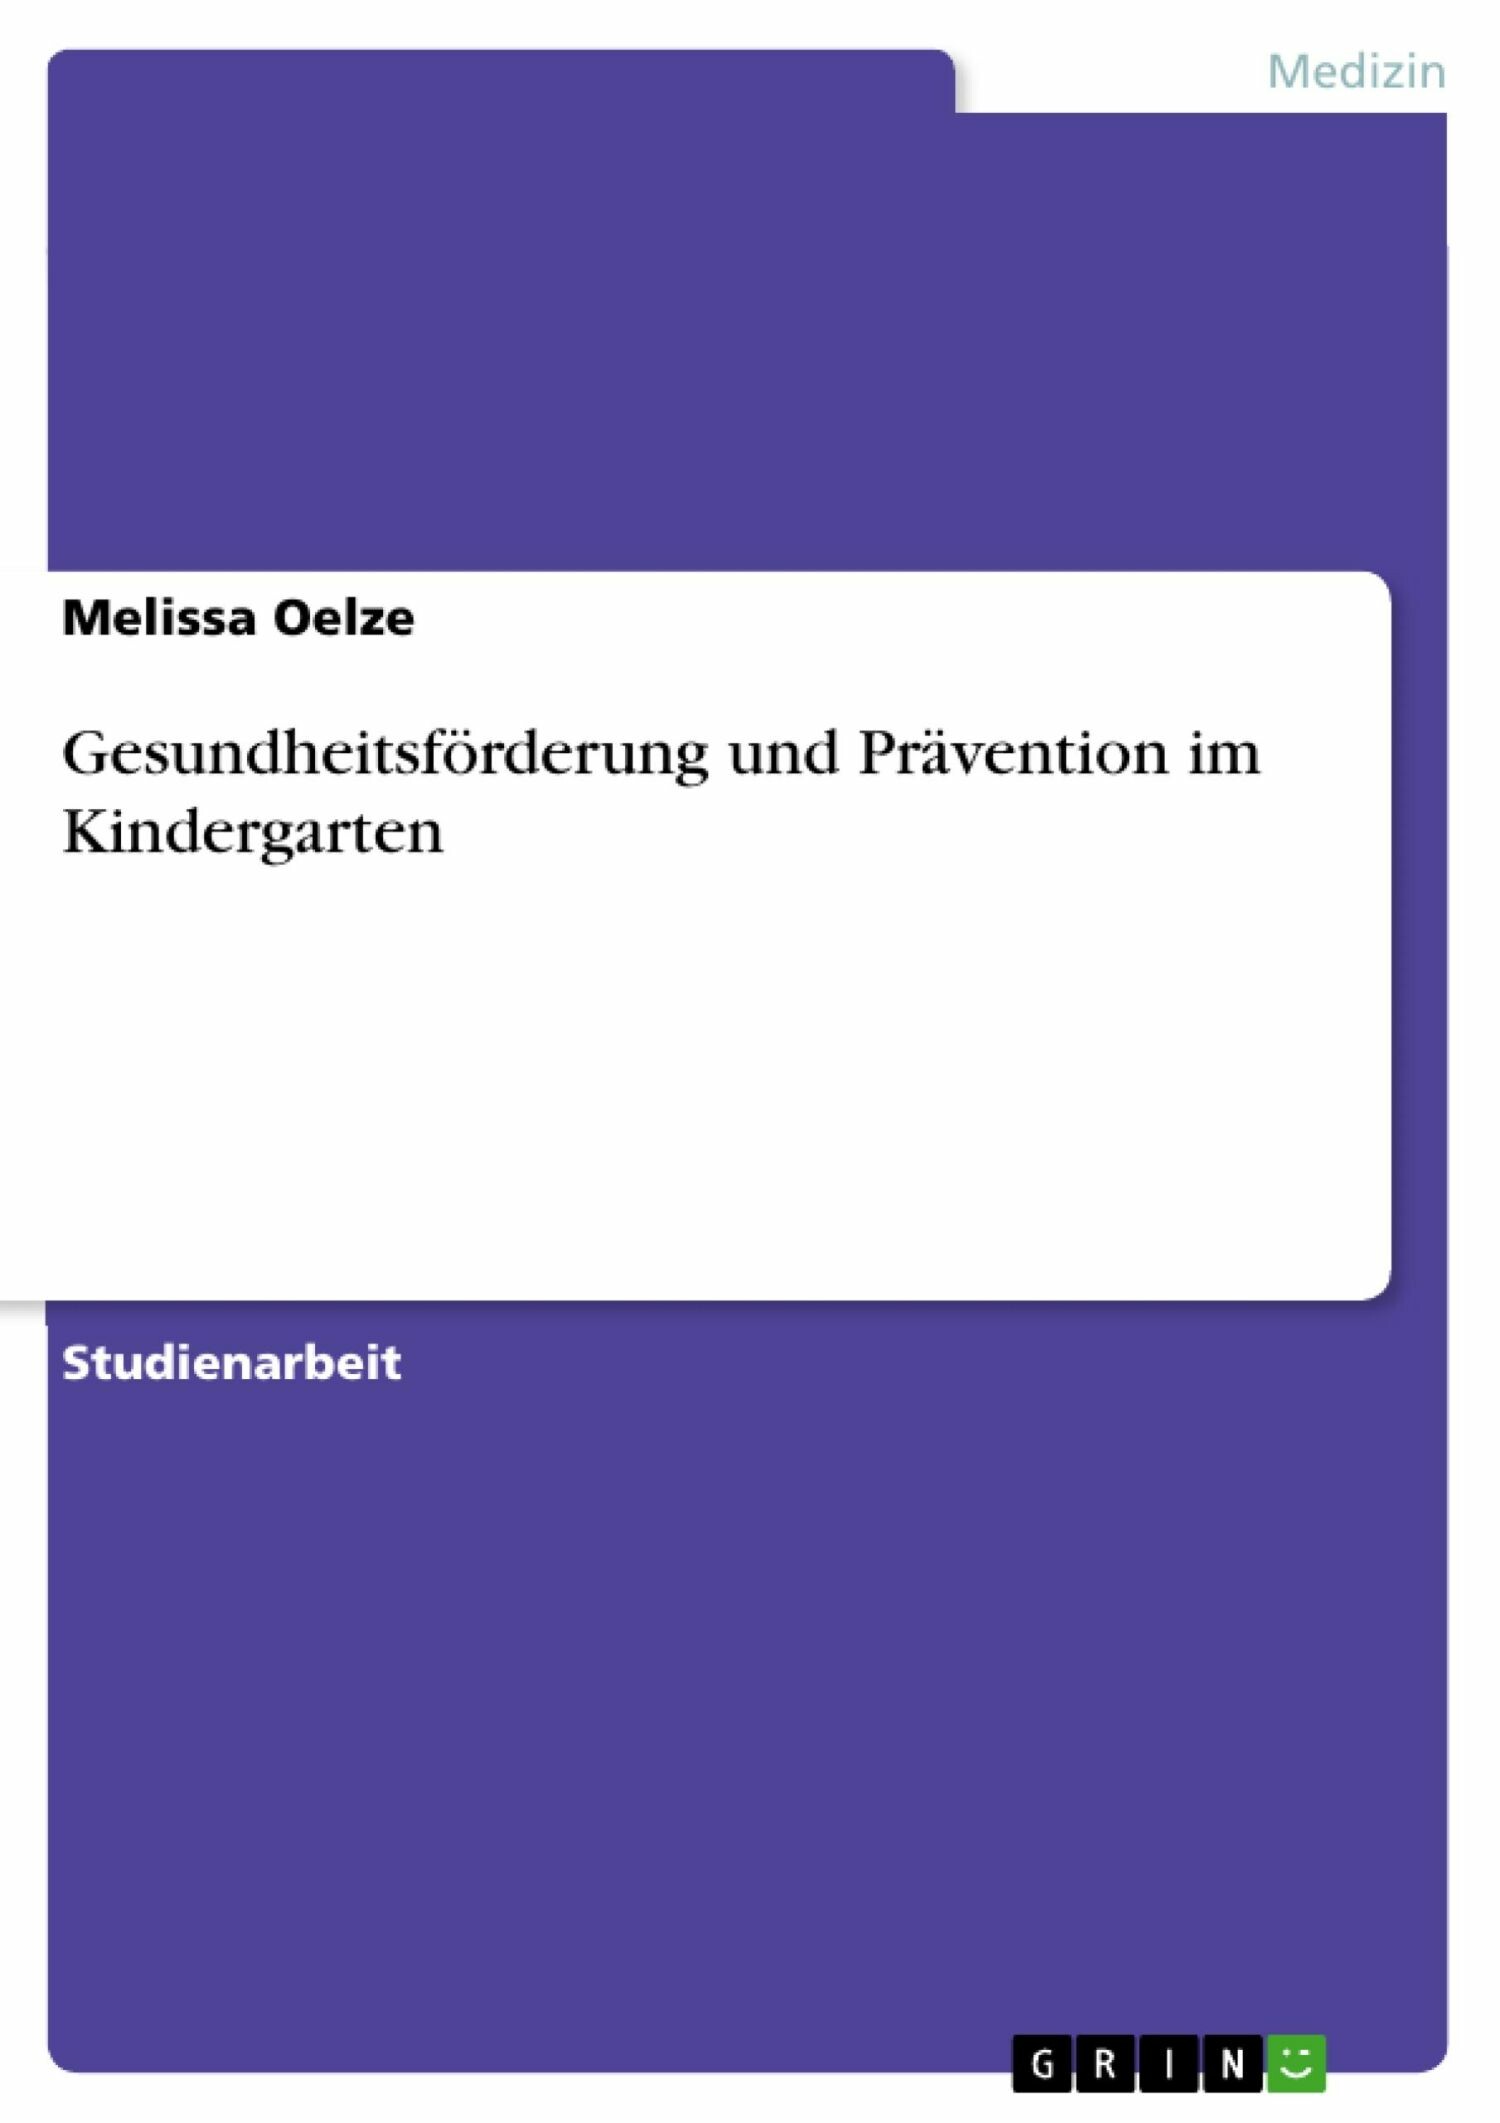 Gesundheitsförderung und Prävention im Kindergarten